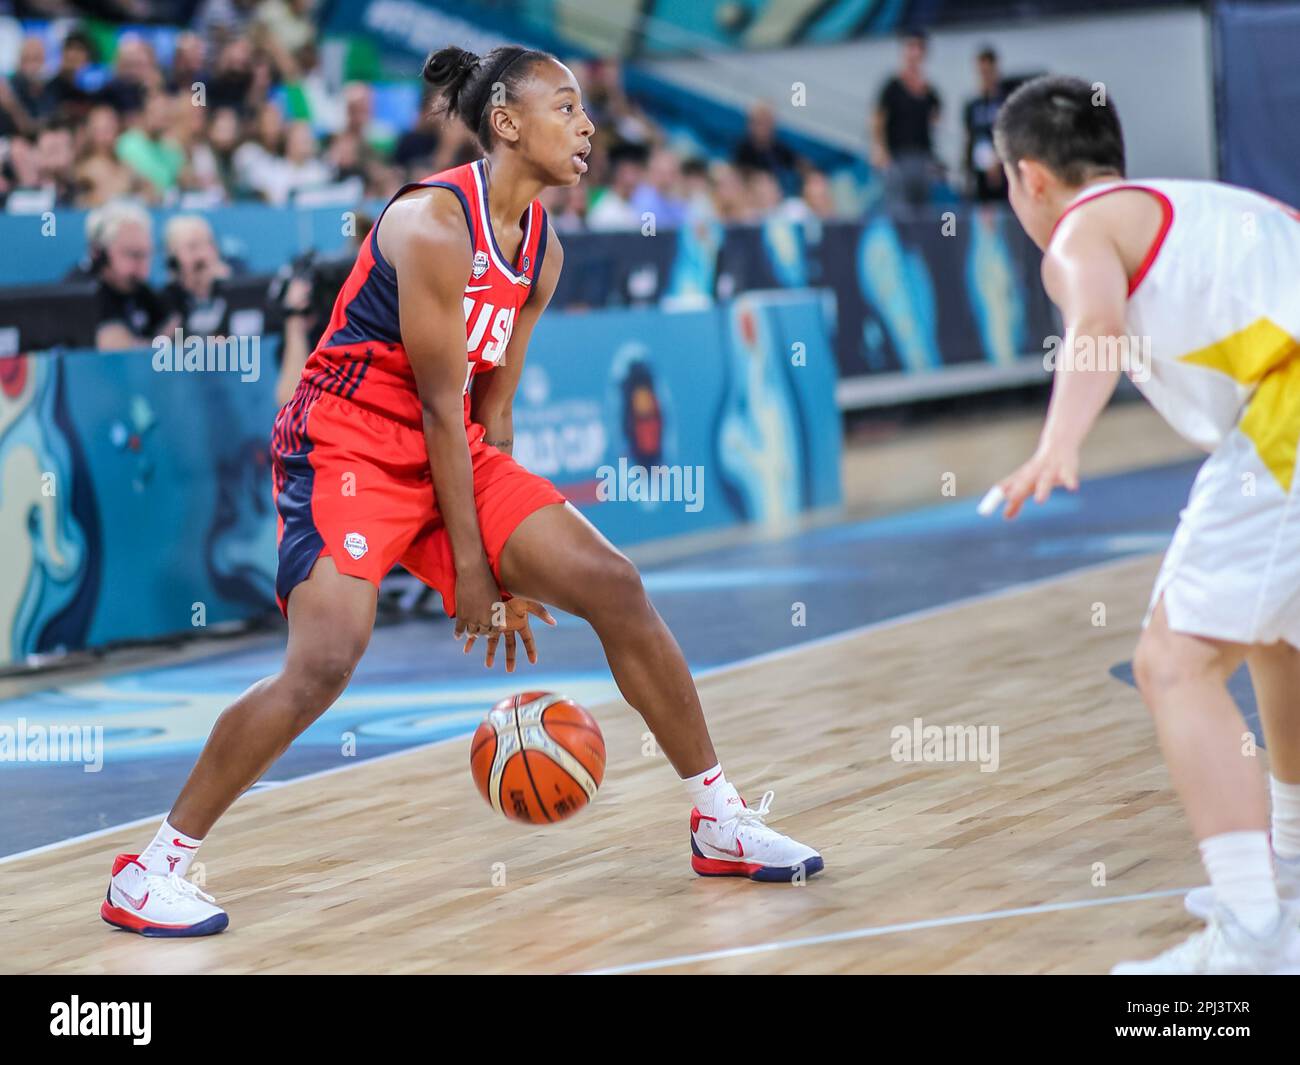 Espagne, Ténérife, 23 septembre 2018: Joueuse de basket-ball pour l'équipe nationale des Etats-Unis, Jewell Loyd, en action pendant la coupe du monde des femmes de la FIBA Banque D'Images